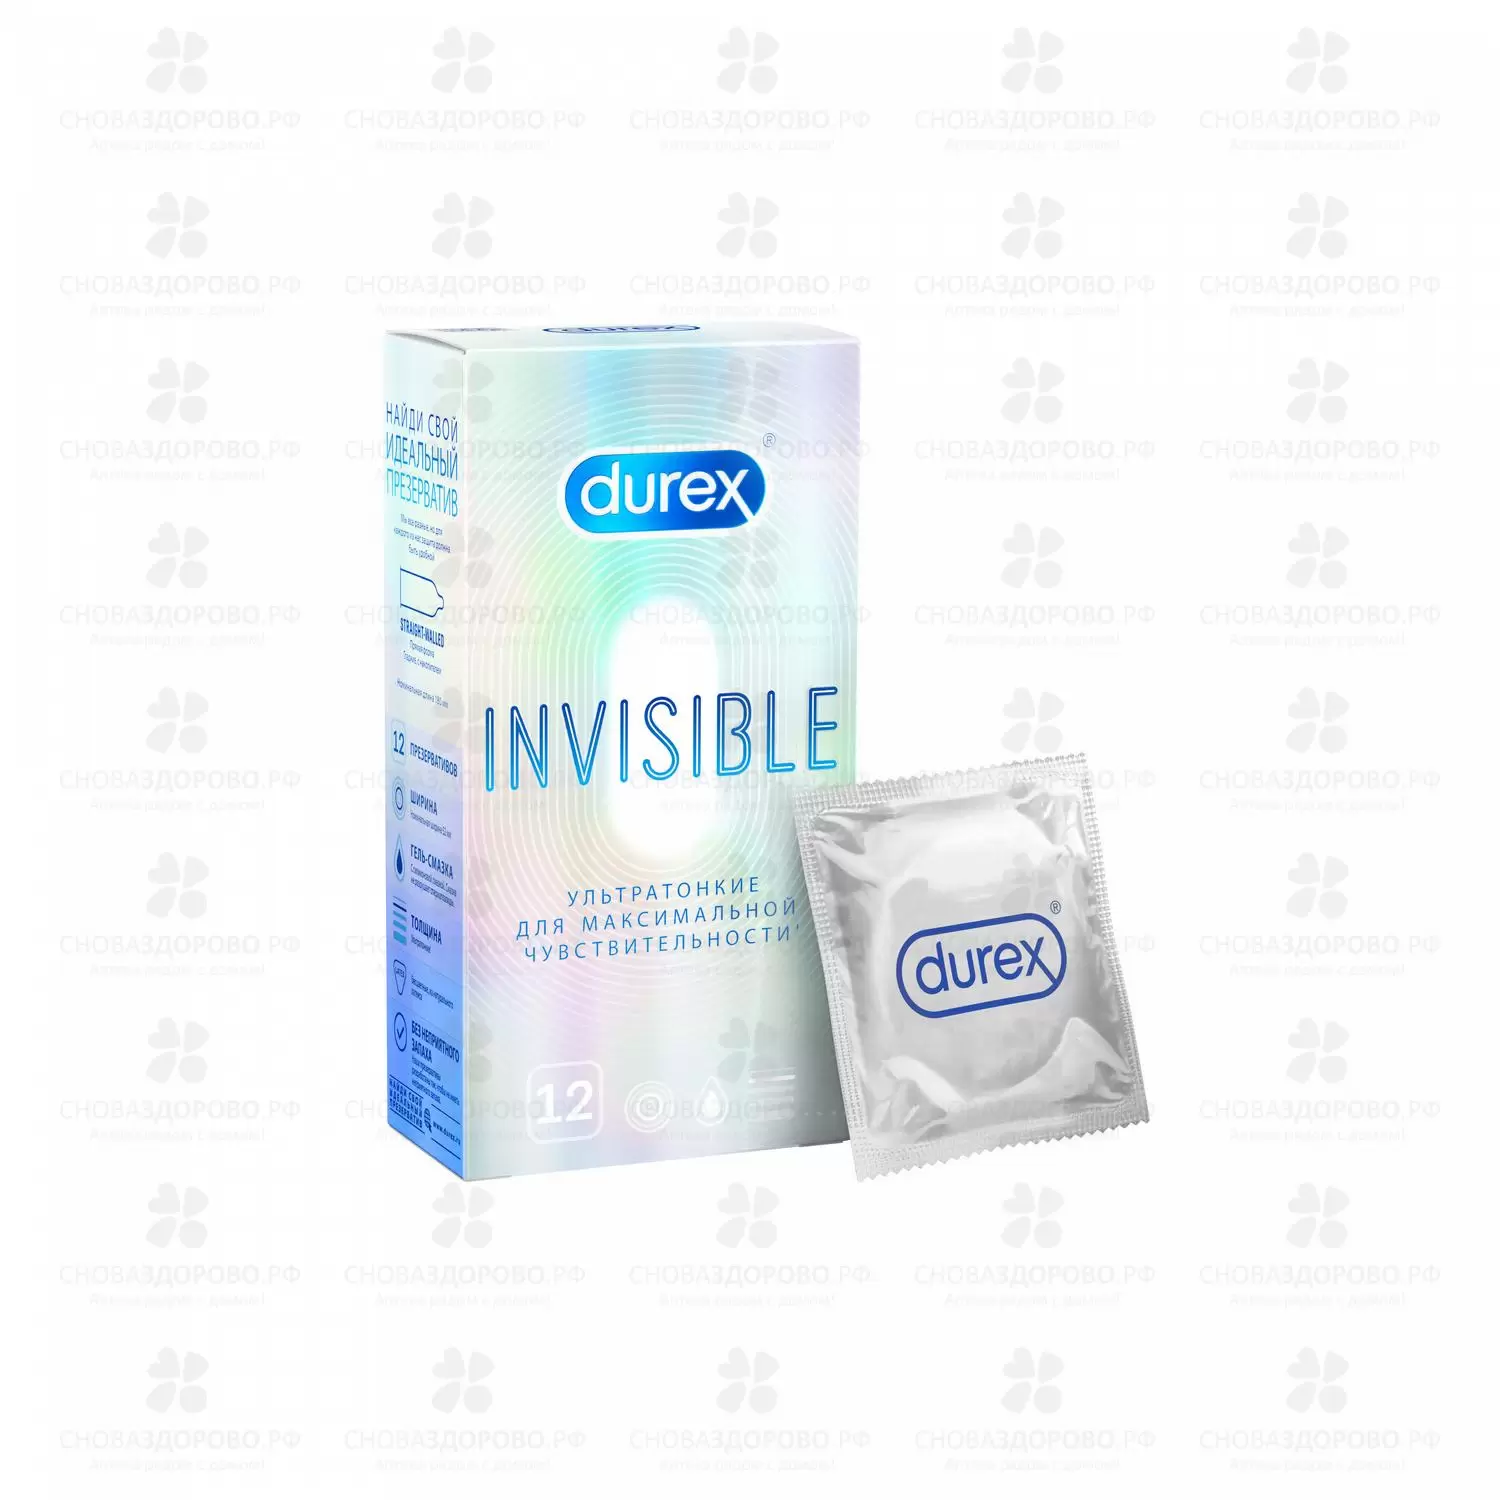 Презервативы Дюрекс Invisible №12 ультратонкие для максимальная чувств. ✅ 26656/06175 | Сноваздорово.рф